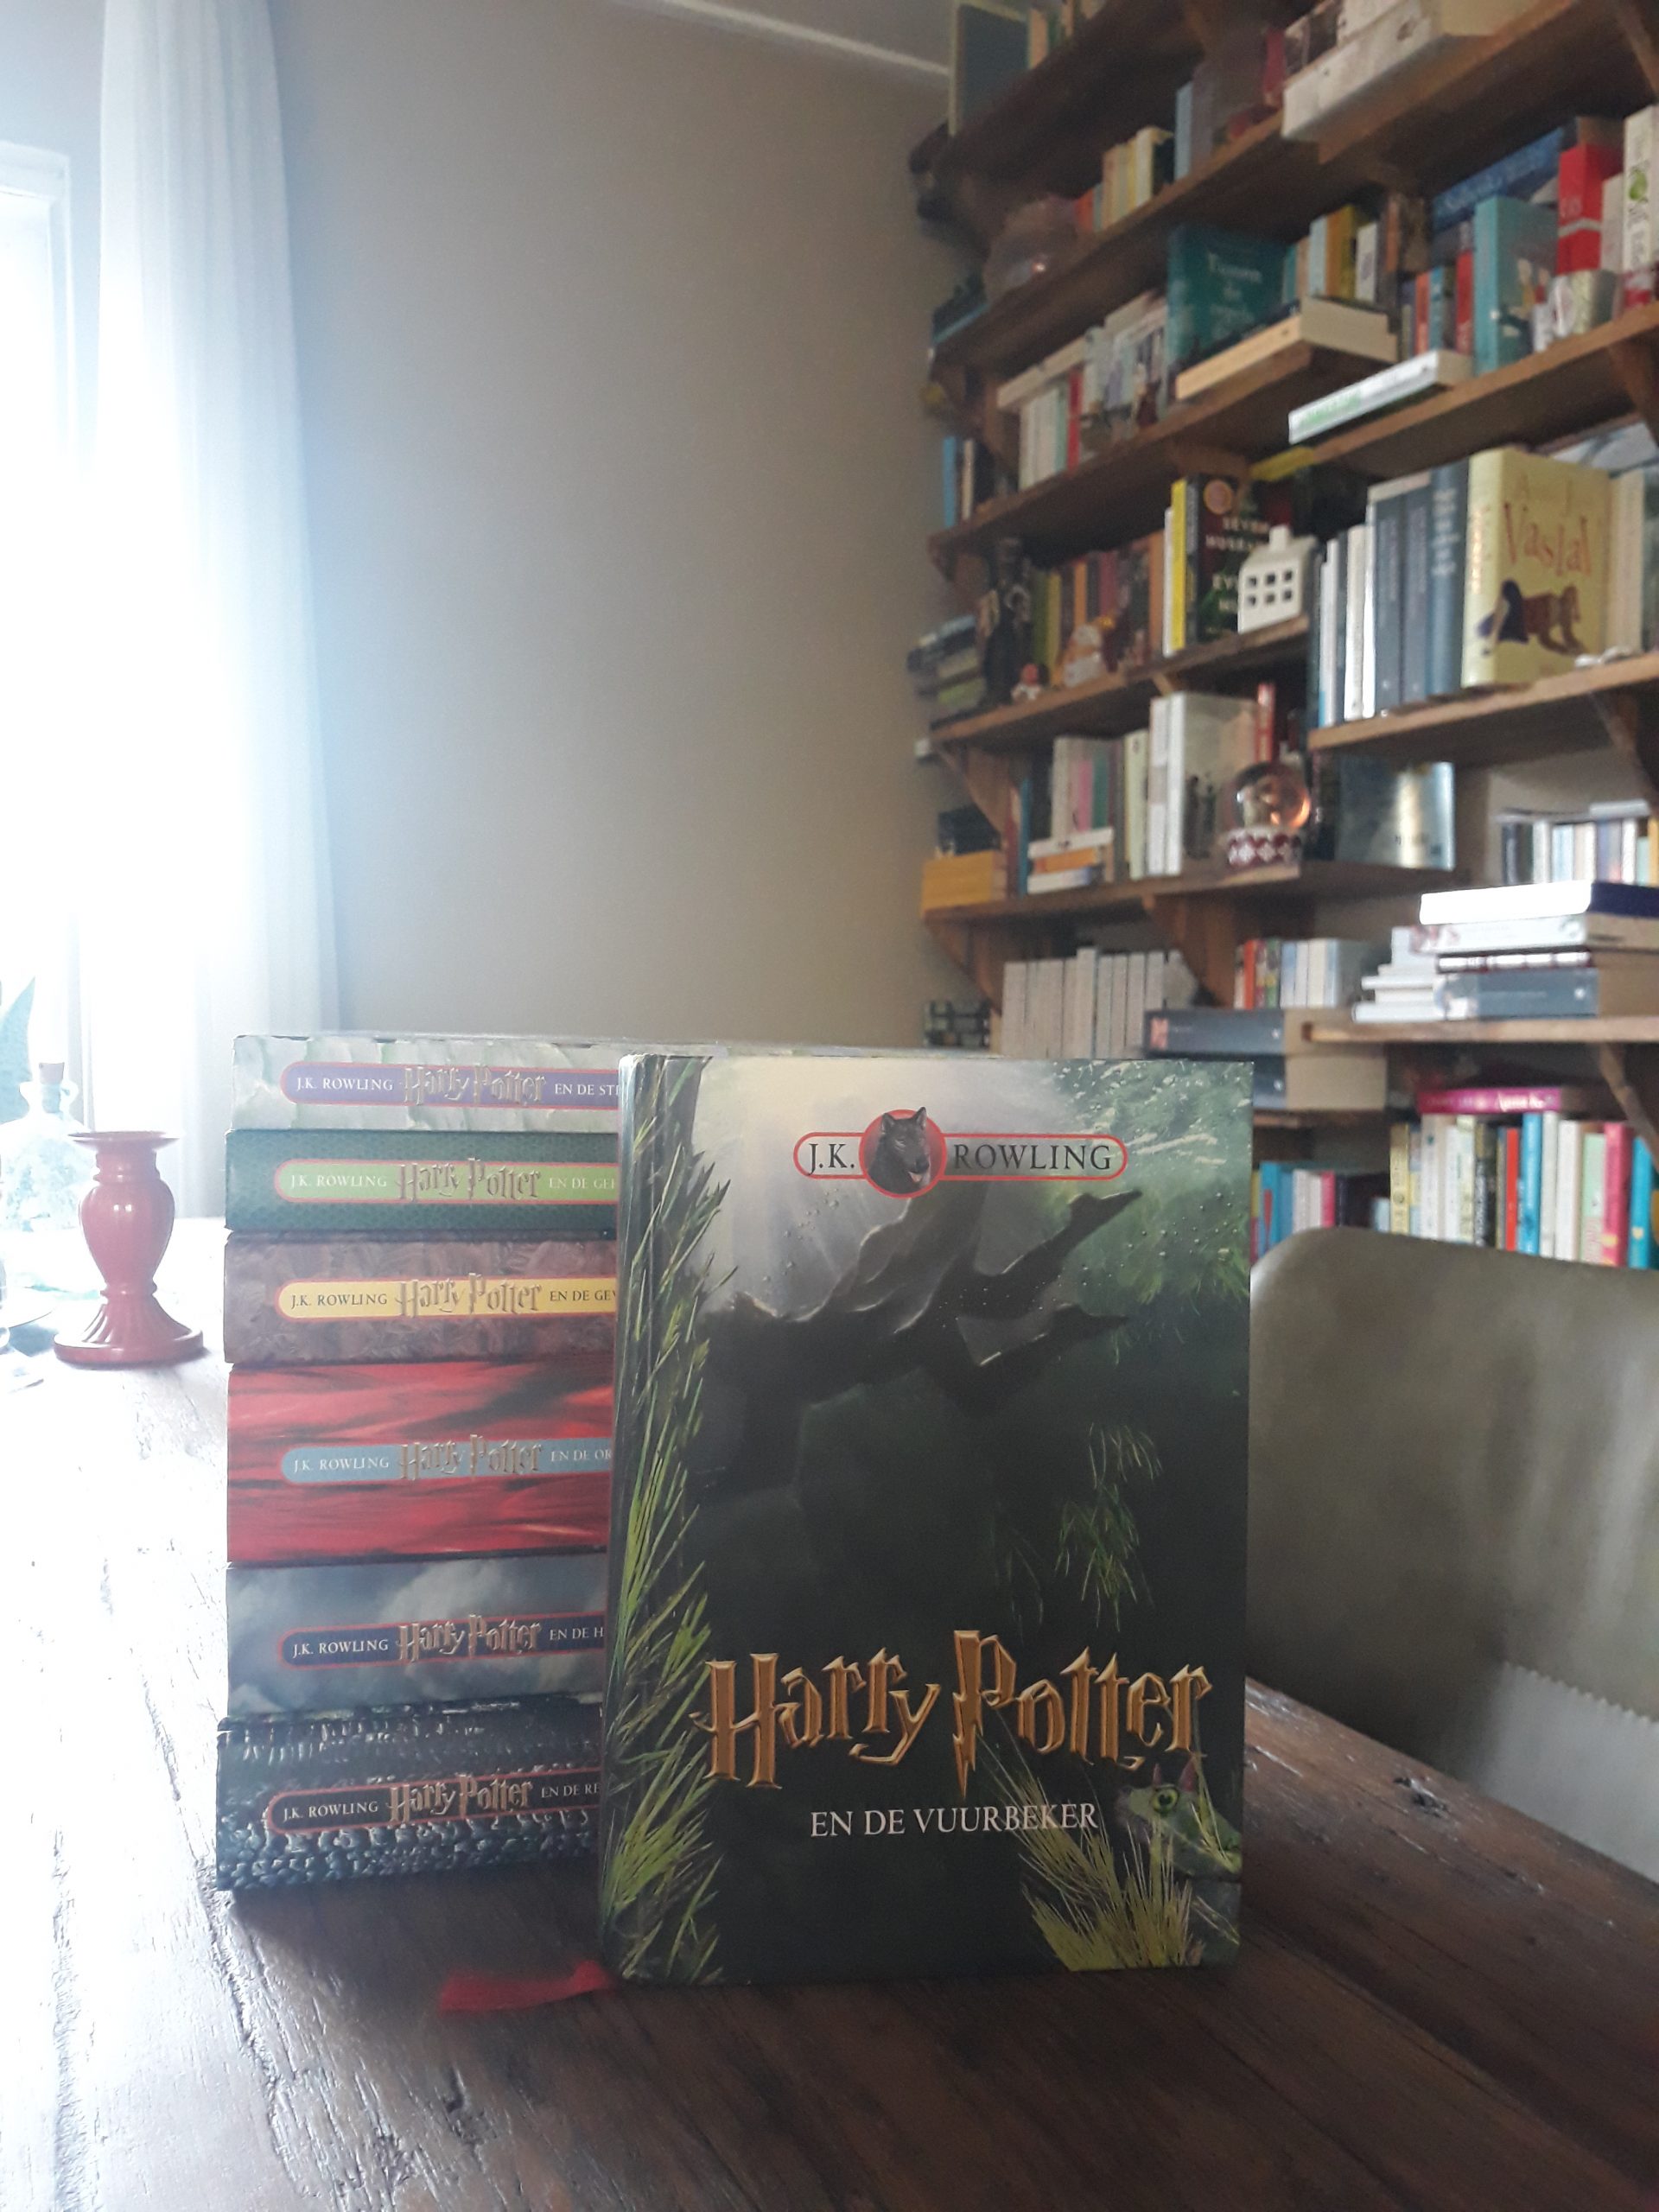 Boekrecensie: Harry Potter en de Vuurbeker – J.K. Rowling